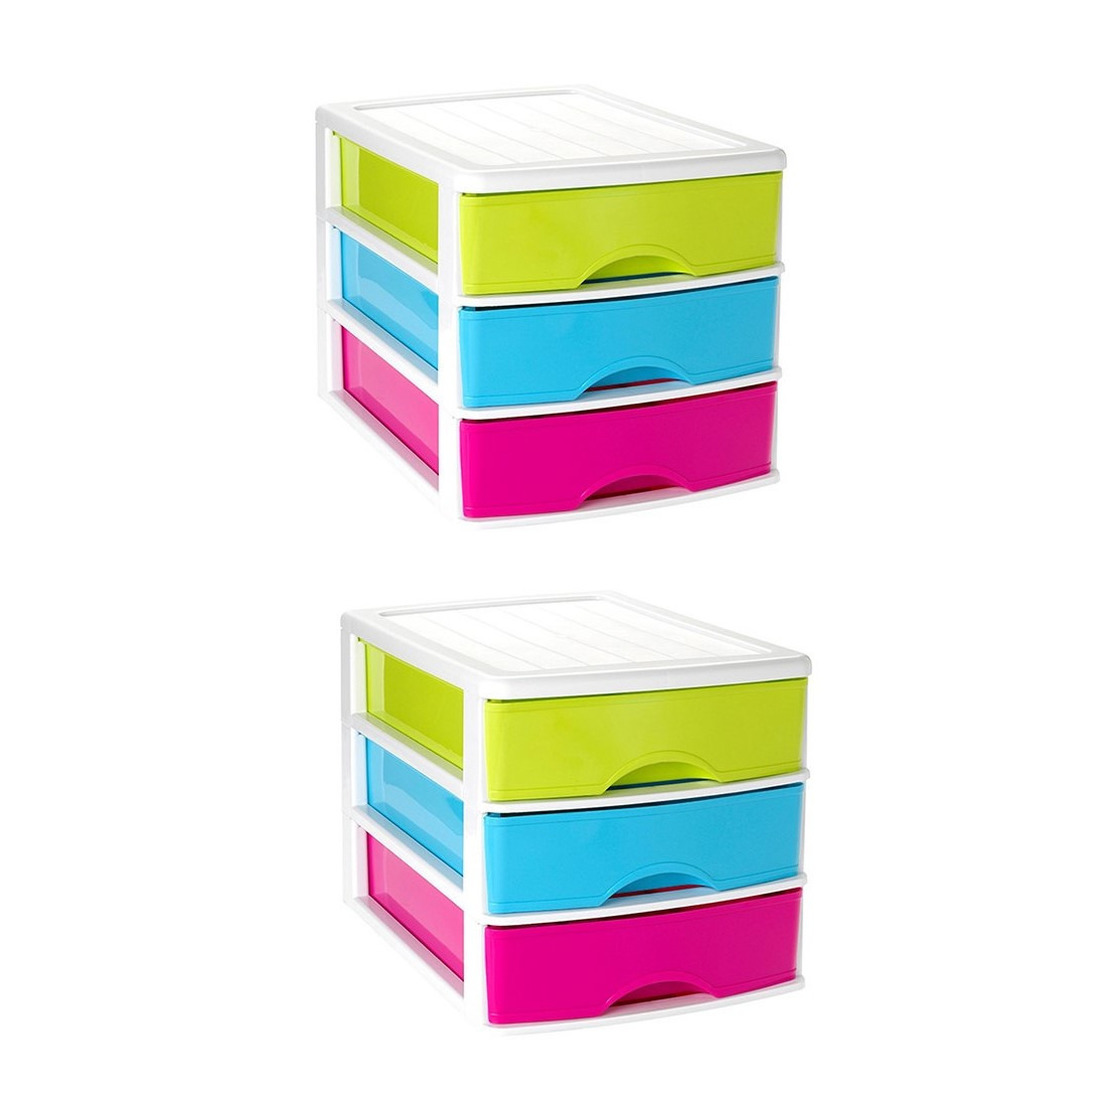 3x stuks ladeblok-bureau organizer met 3 lades multi-color-wit L 35,5 x B 27 x H 26 cm